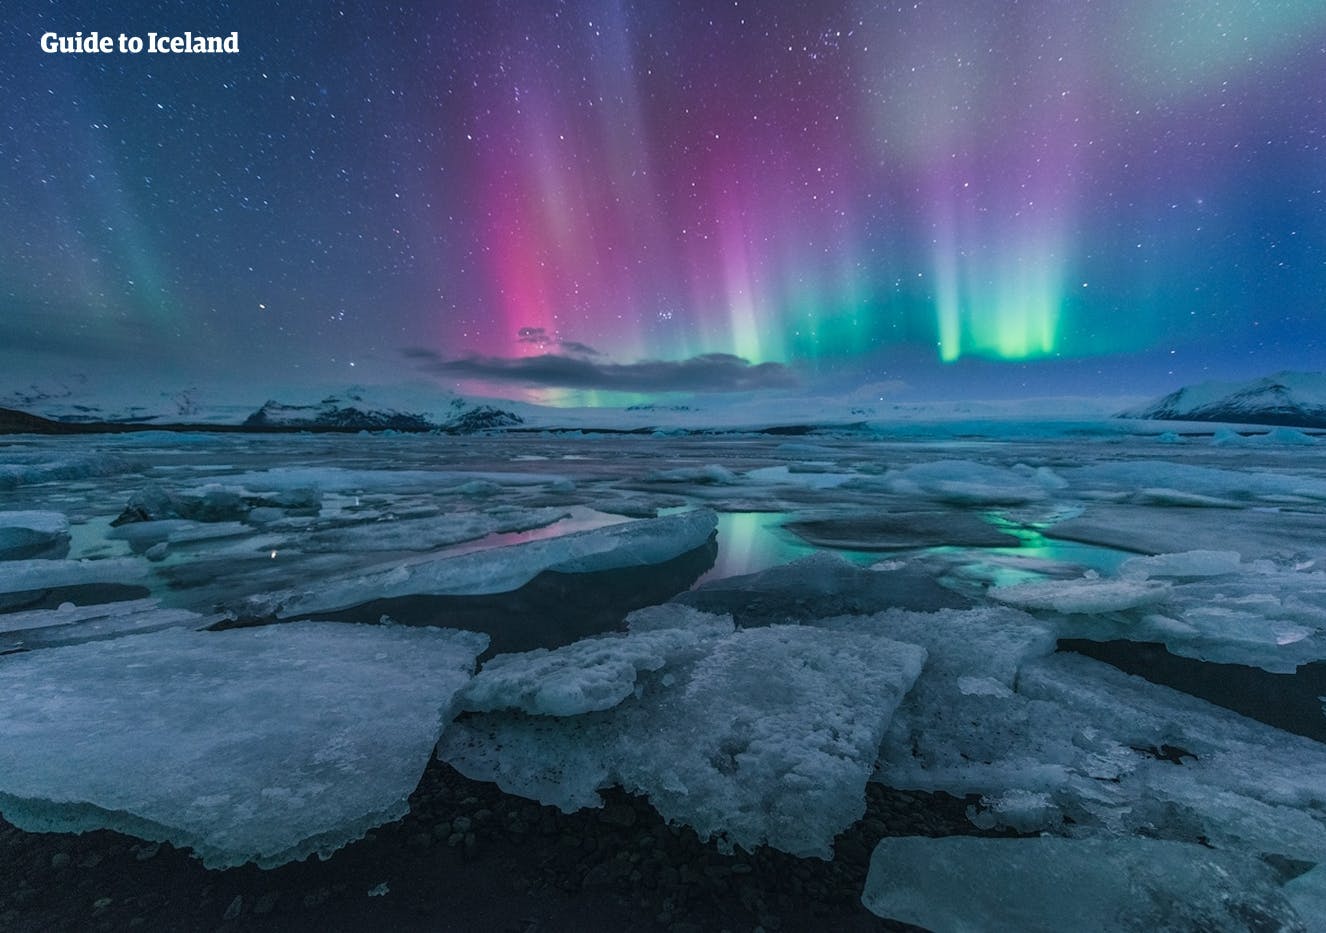 Może zobaczysz tańczące zorzę polarną nad laguną Jökulsárlón podczas tej taniej zimowej wycieczki.